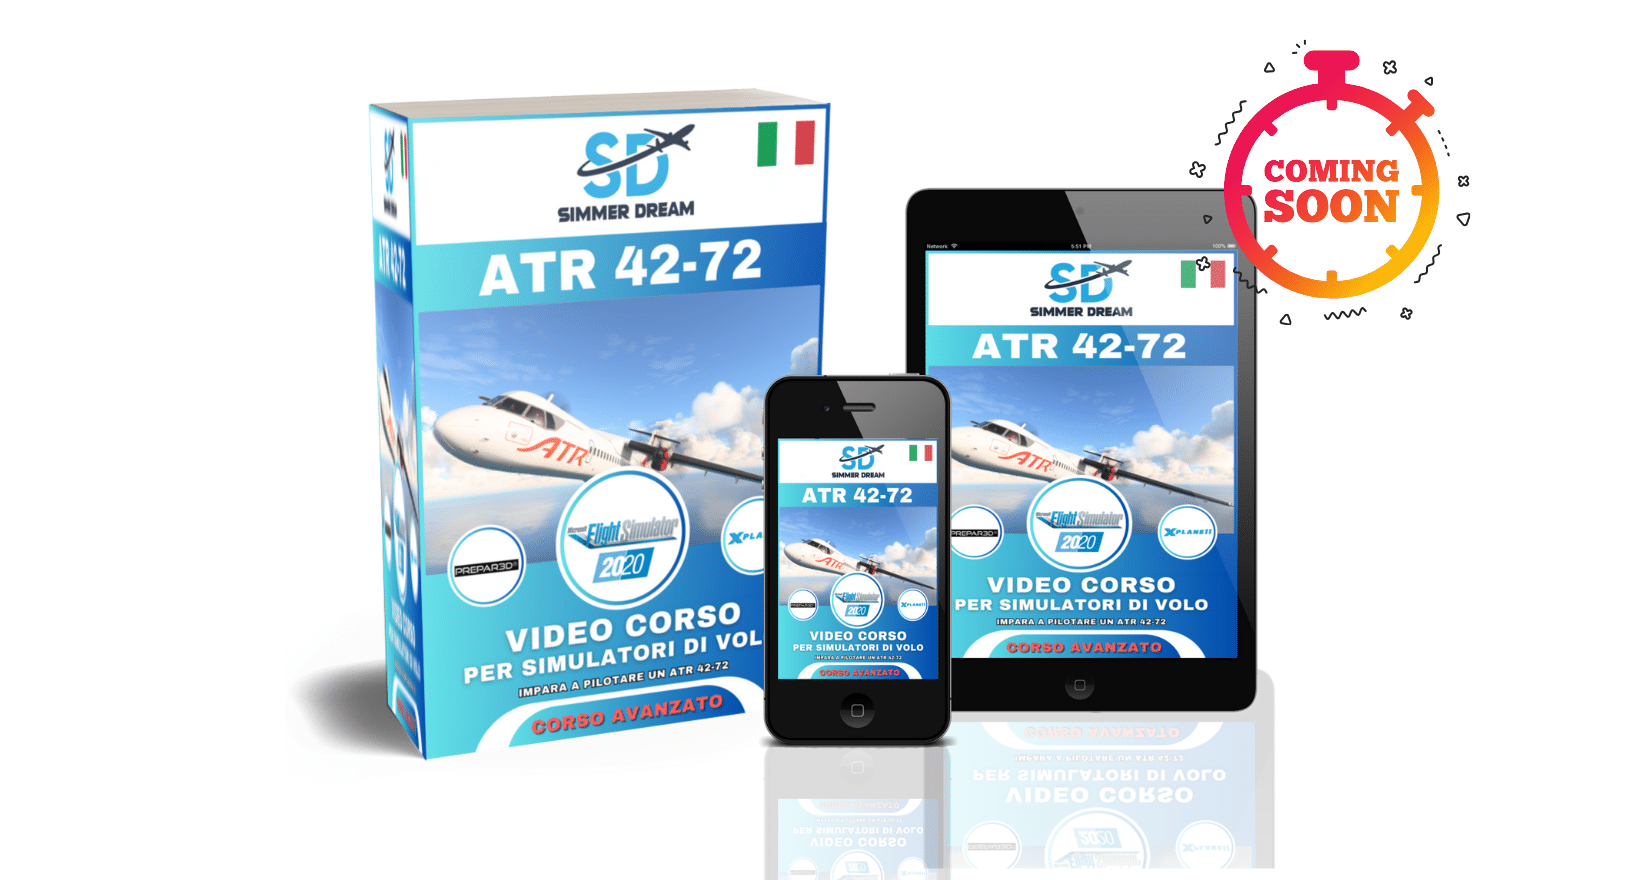 video corso ATR 42-72 coming soon